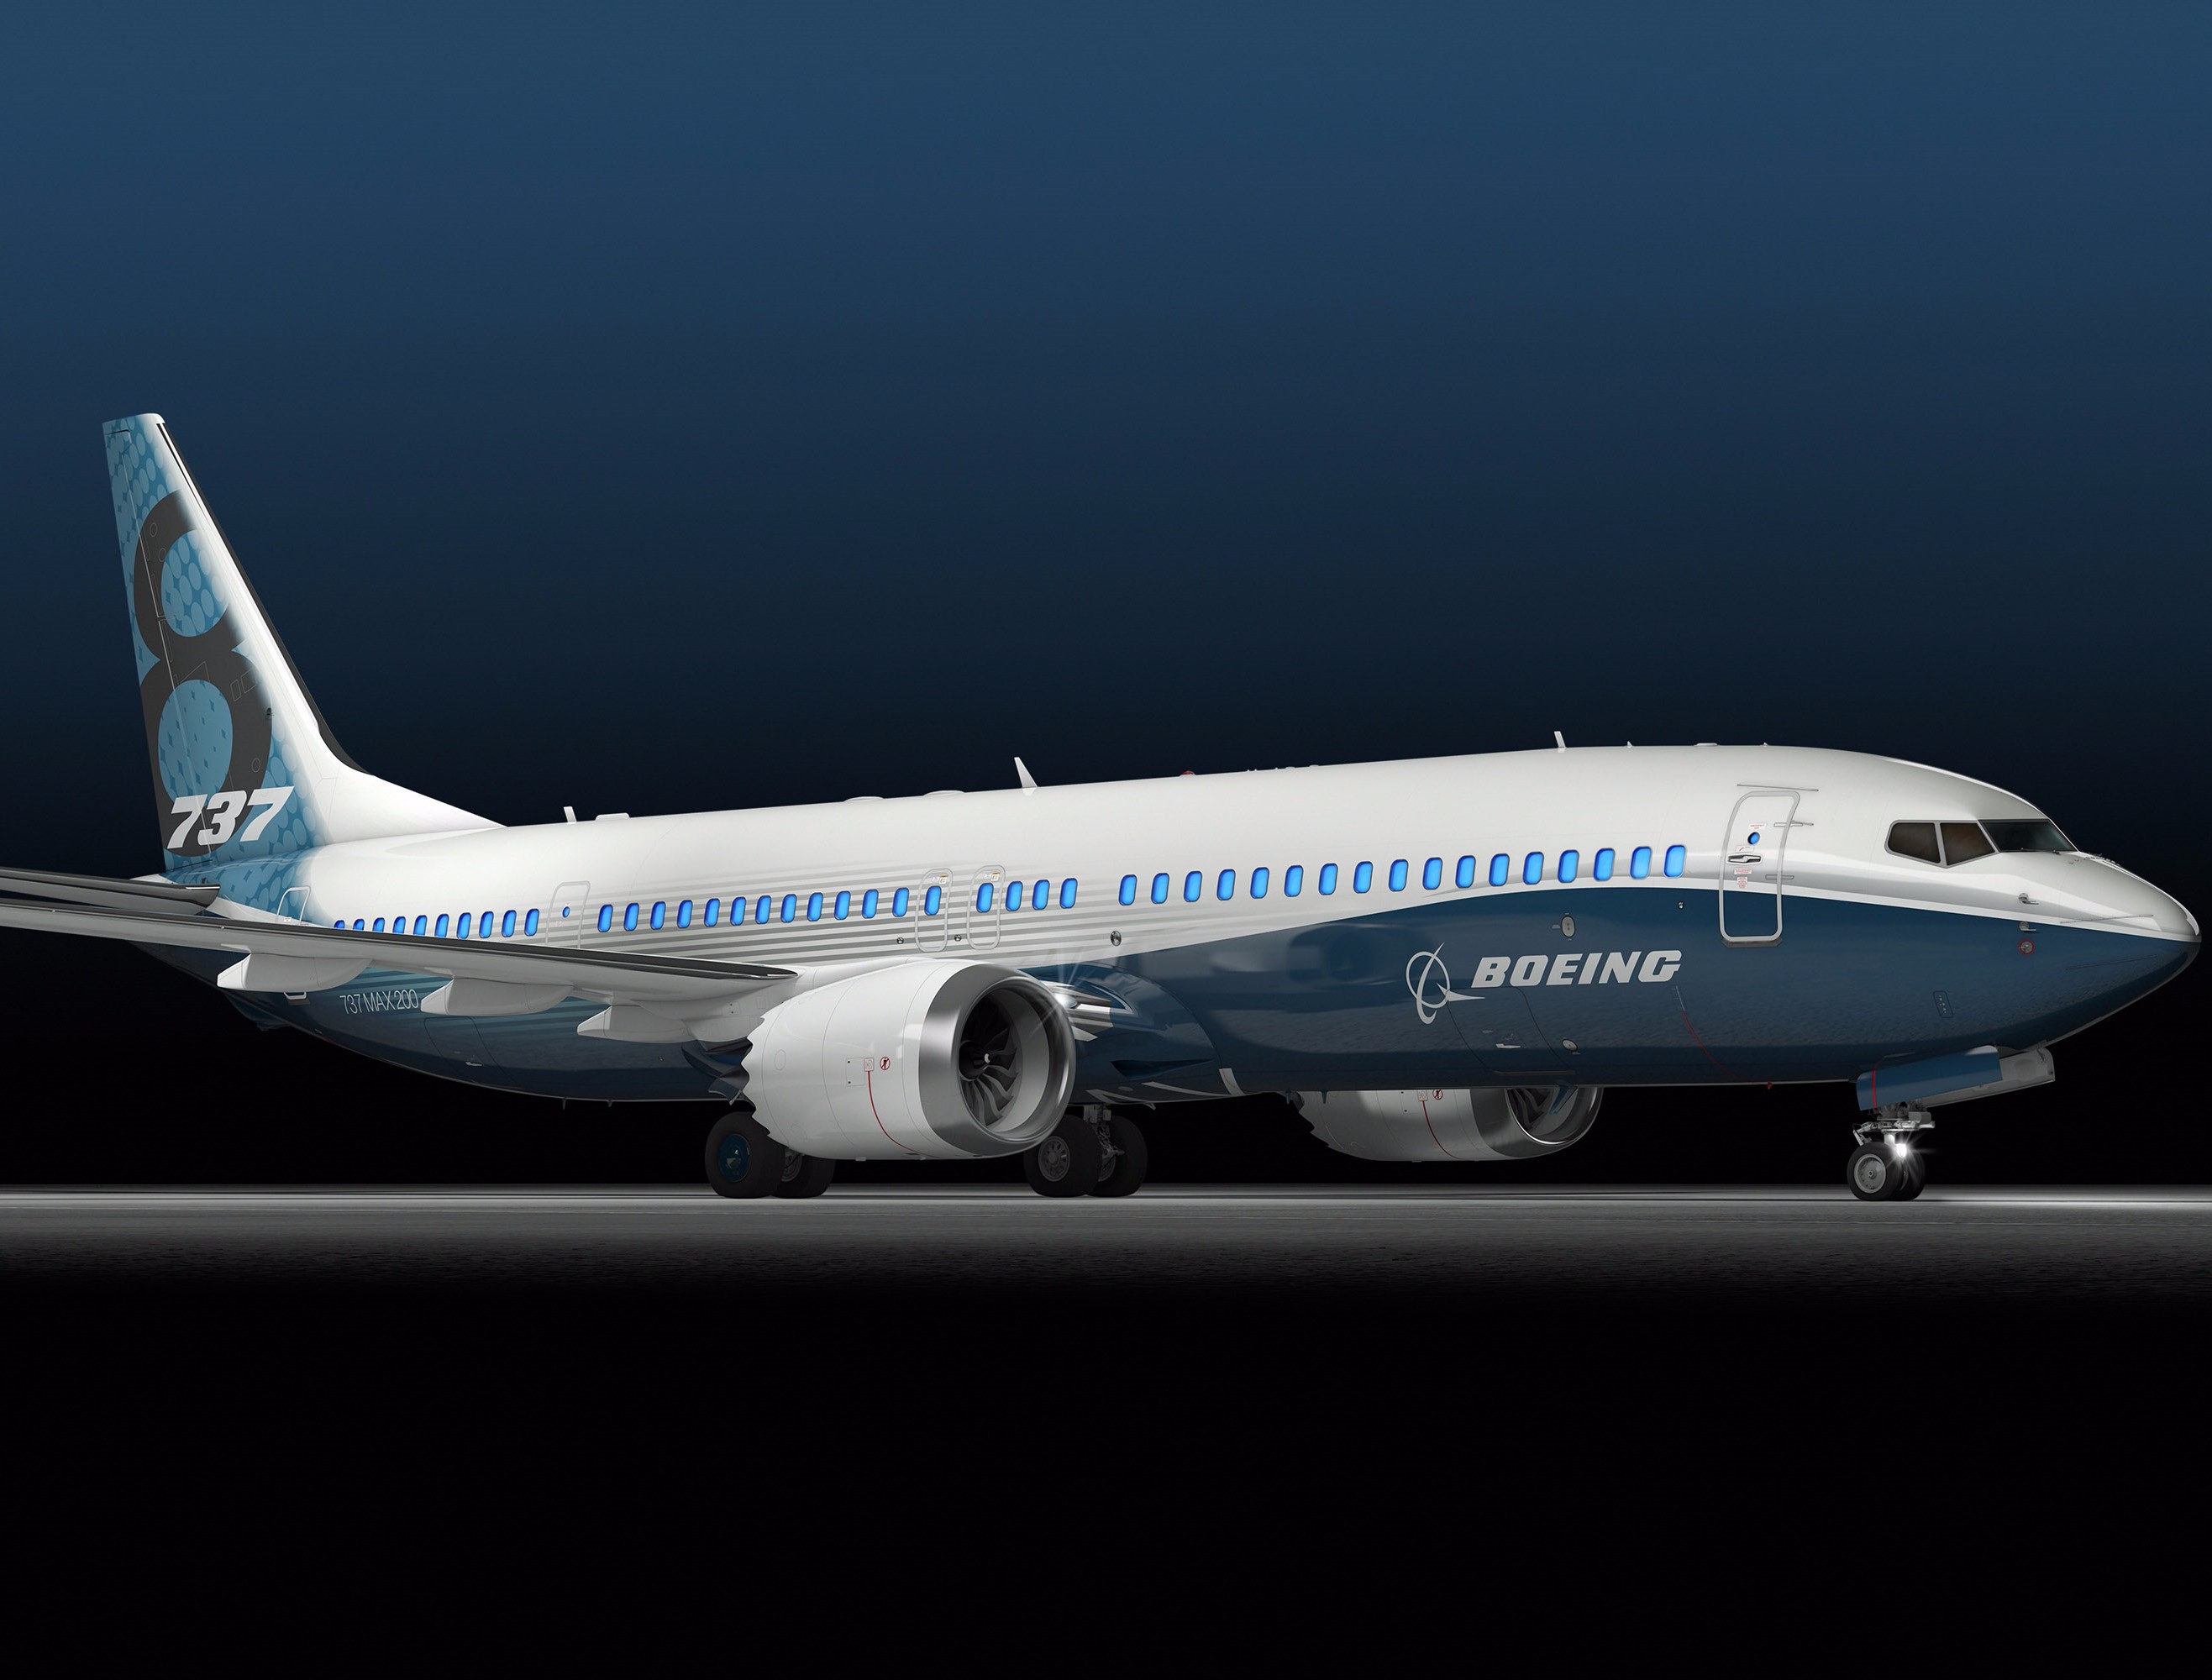 Aviazione, la Boeing svela il prototipo del nuovo 737 Max (video)